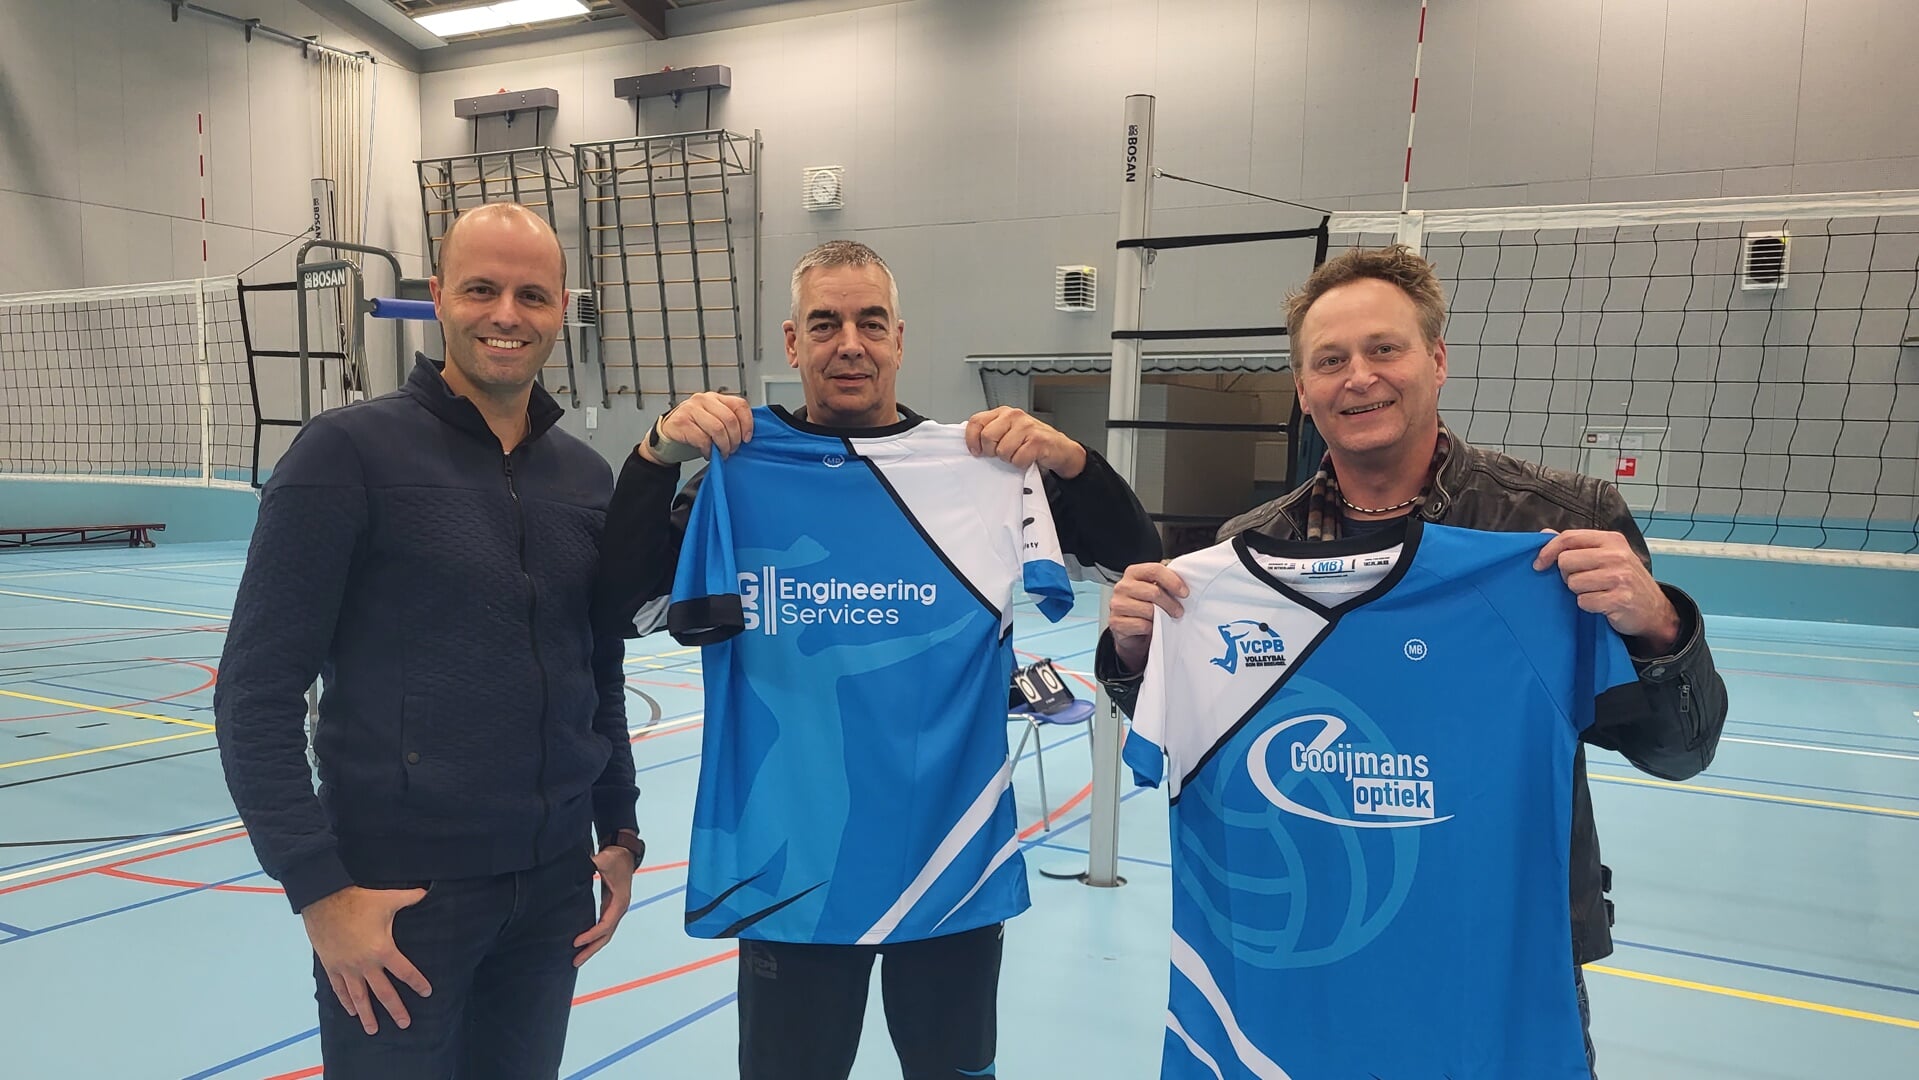 Foto: van links naar rechts: Voorzitter Robbie Oerlemans en sponsors Eddy van Waalwijk en Sander Cooijmans